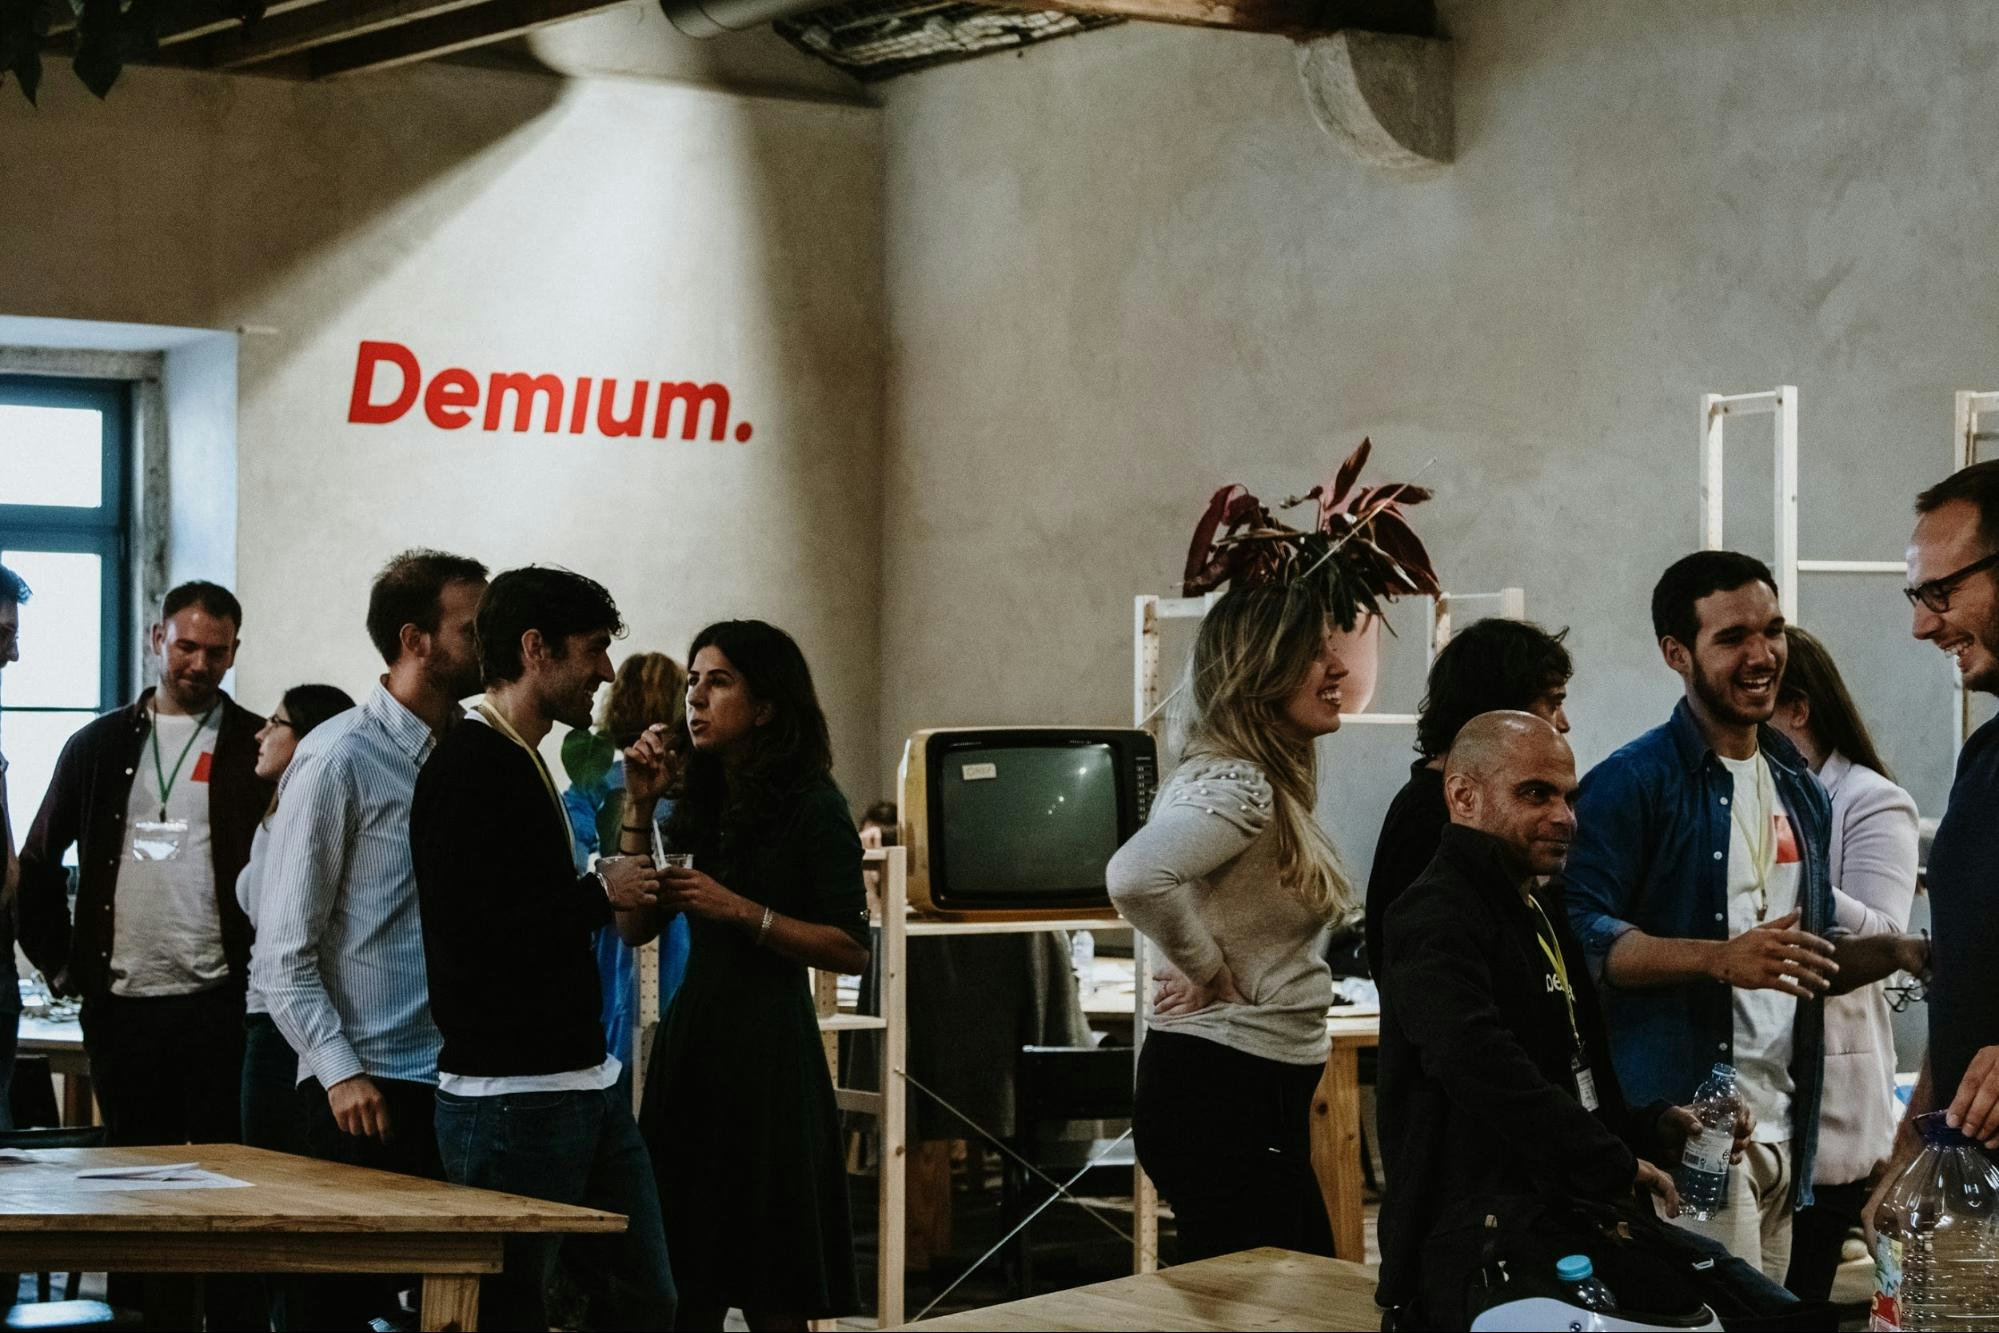 A meetup event at Demium’s Lisbon hub